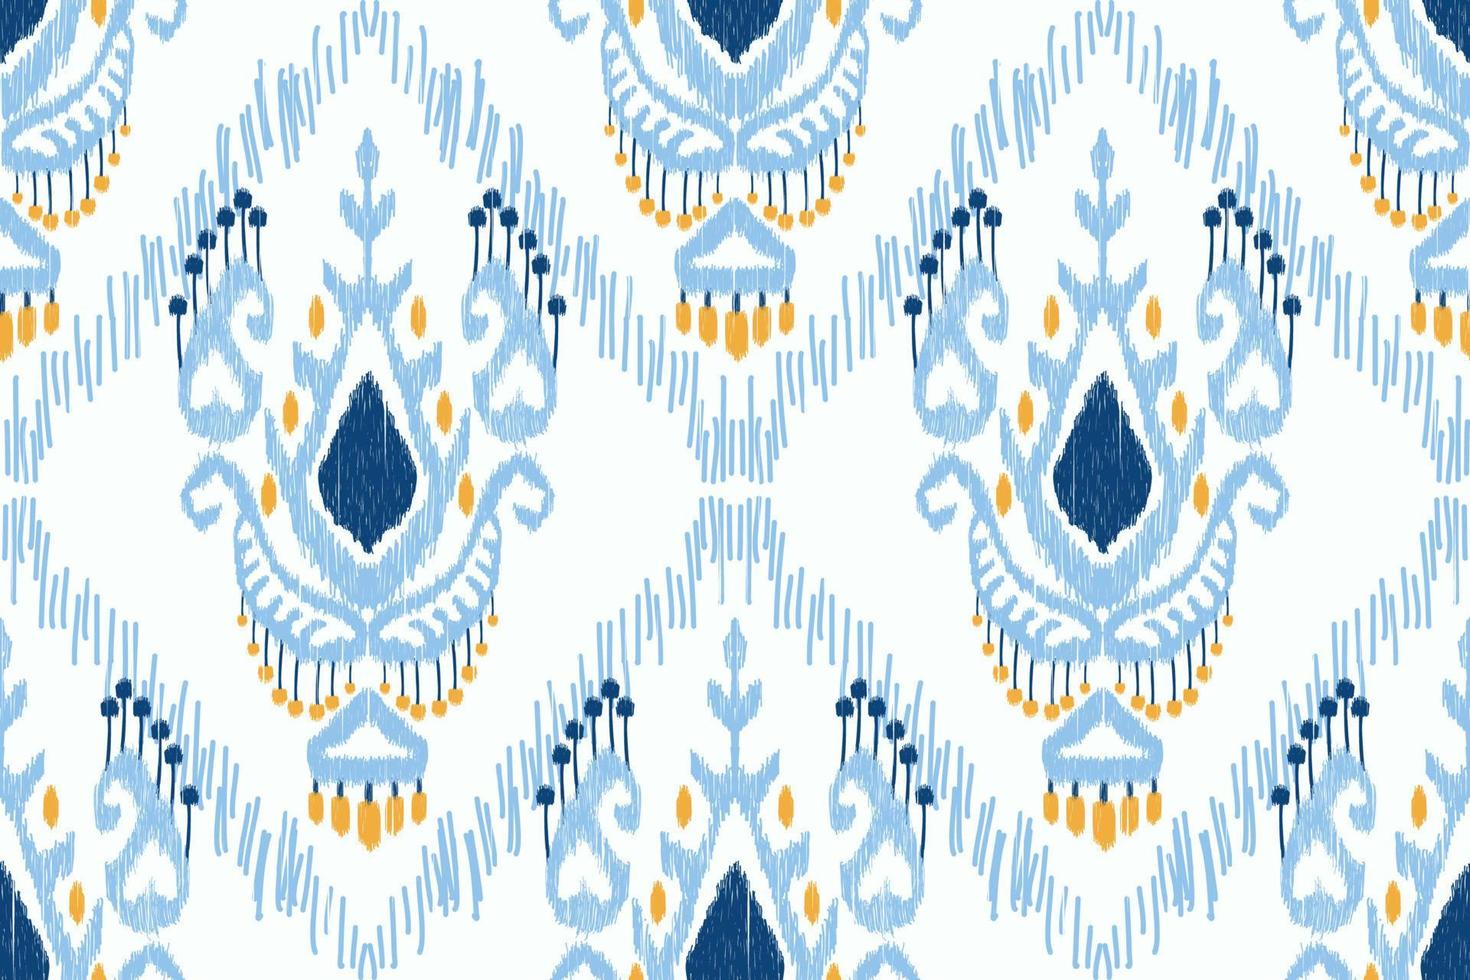 bordado de paisley floral ikat sobre fondo blanco.patrón geométrico étnico oriental sin fisuras tradicional.ilustración vectorial abstracta de estilo azteca.diseño para textura,tela,ropa,envoltura,alfombra. vector